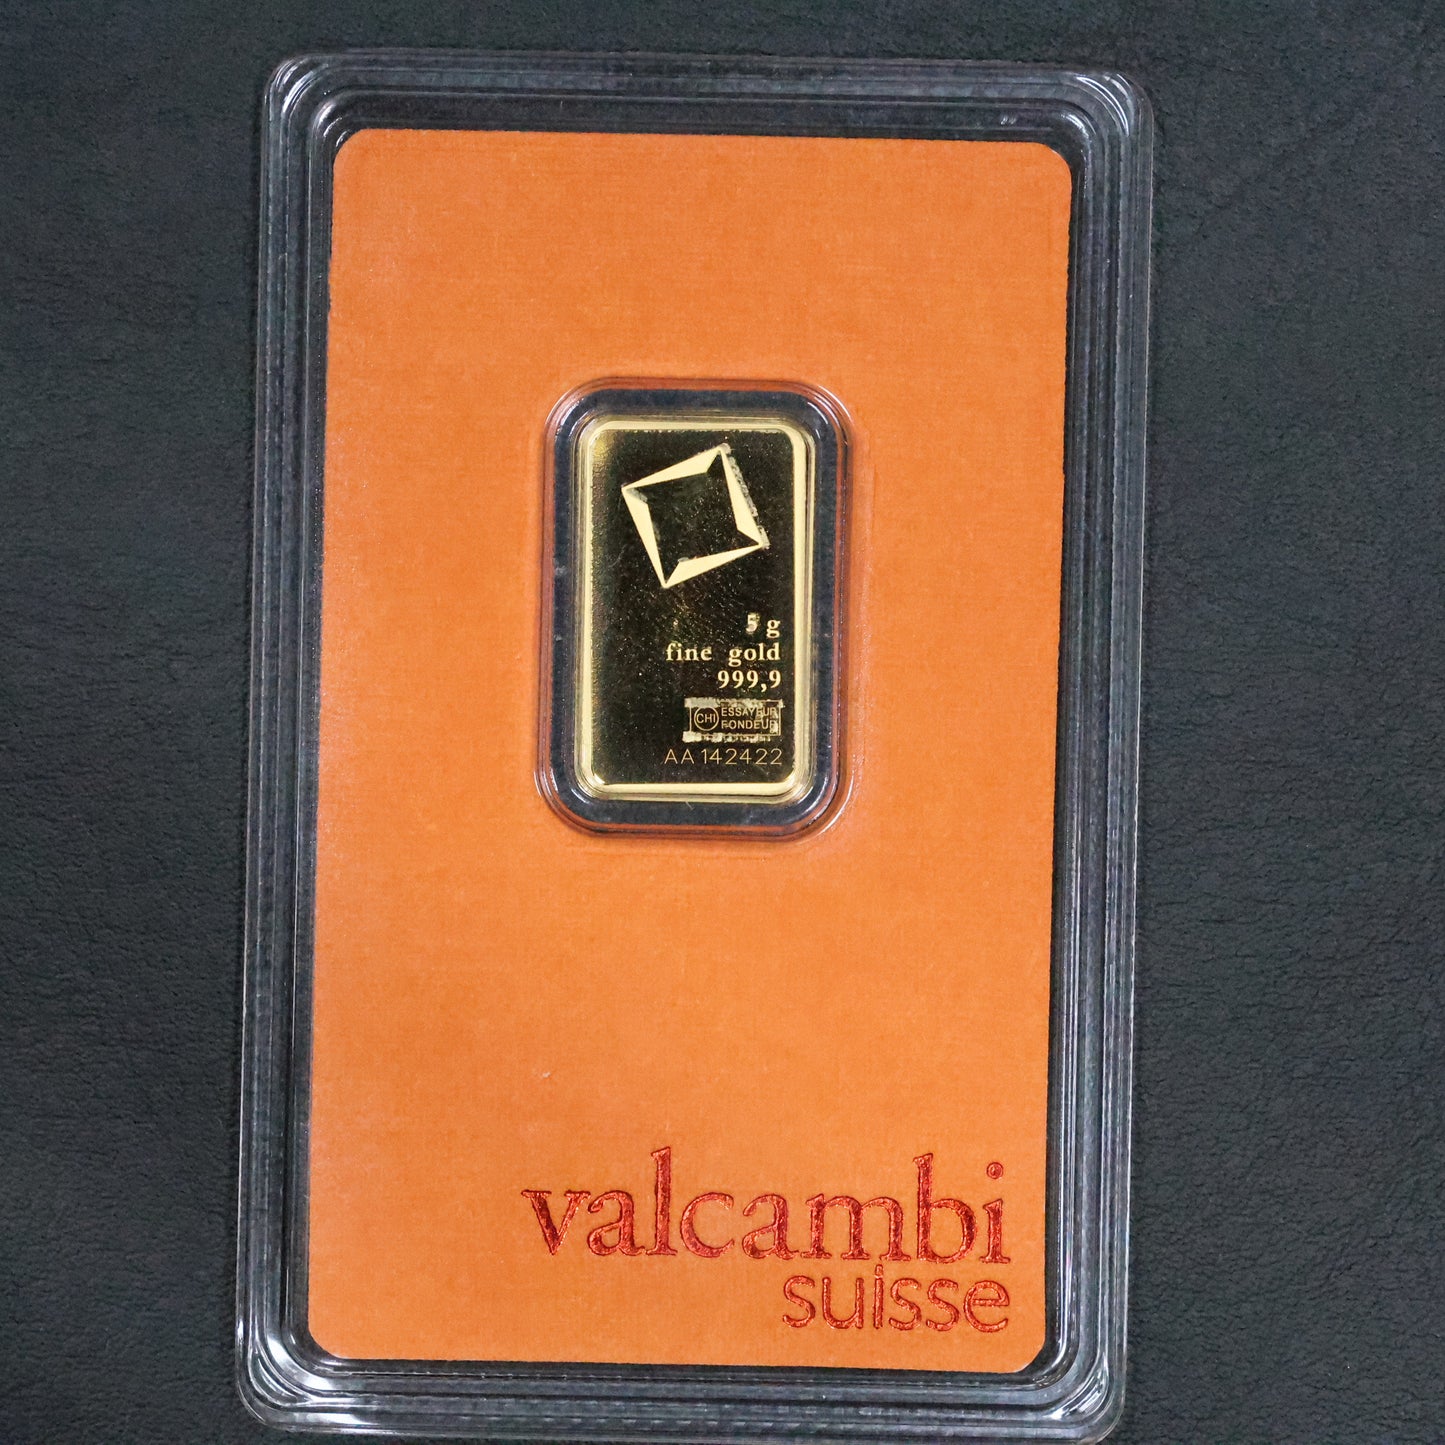 Valcambi Suisse 5 Gram Gold Bar .9999 Fine Sealed In Assay